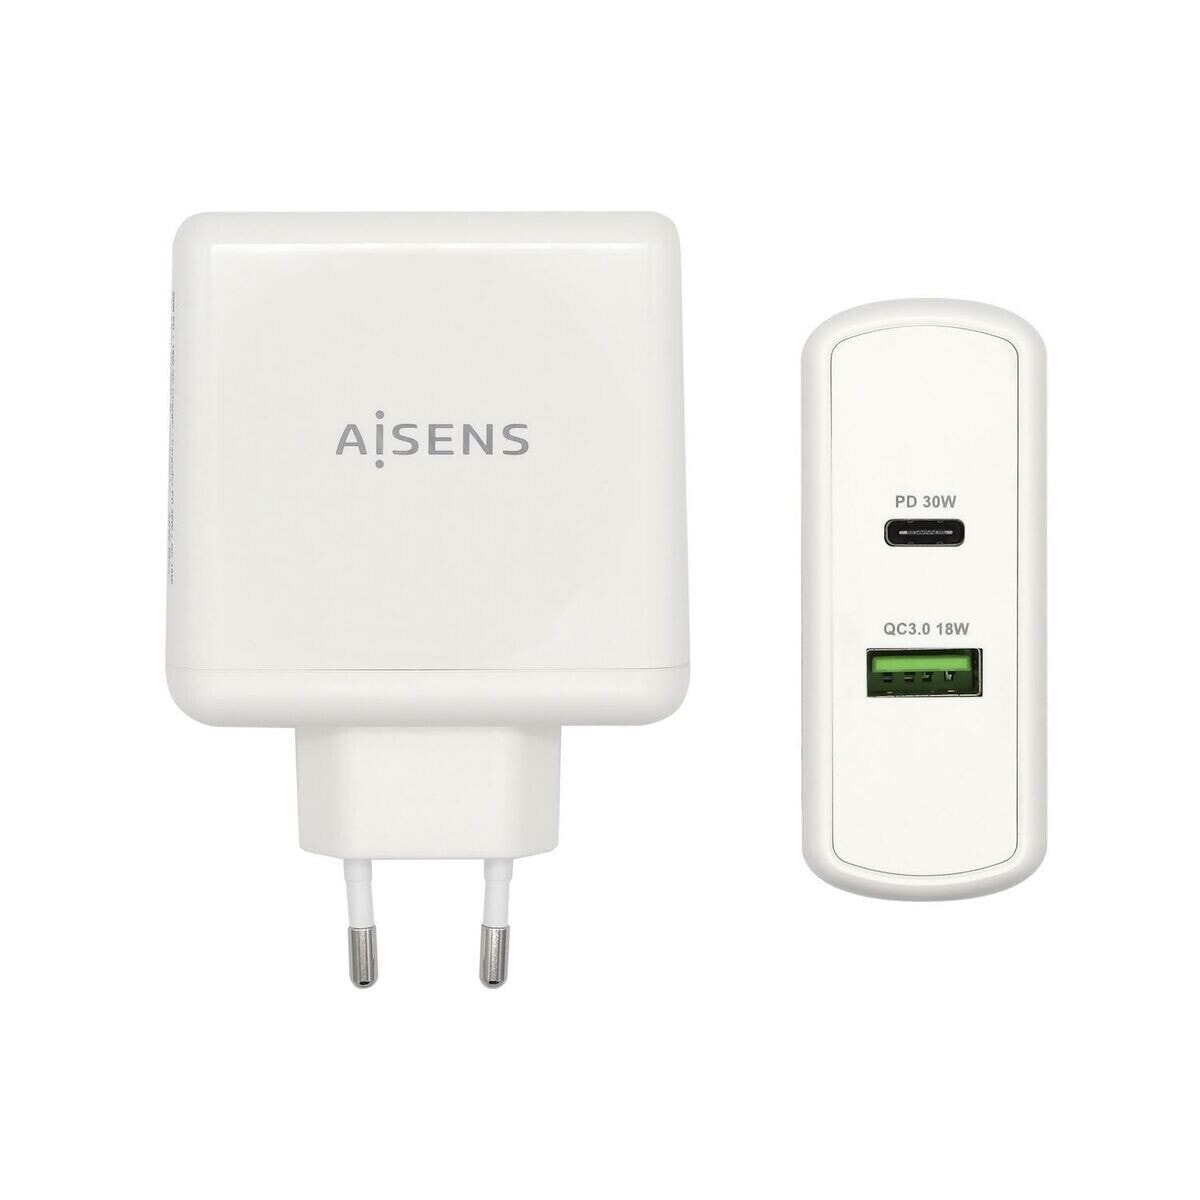 AISENS ASCH-2PD45A-W зарядное устройство для мобильных устройств GPS, Игровое устройство управления, MP3, MP4, Мобильный телефон, Ноутбук, Смартфон, Планшет Белый Кабель переменного тока Быстрая зарядка Для помещений